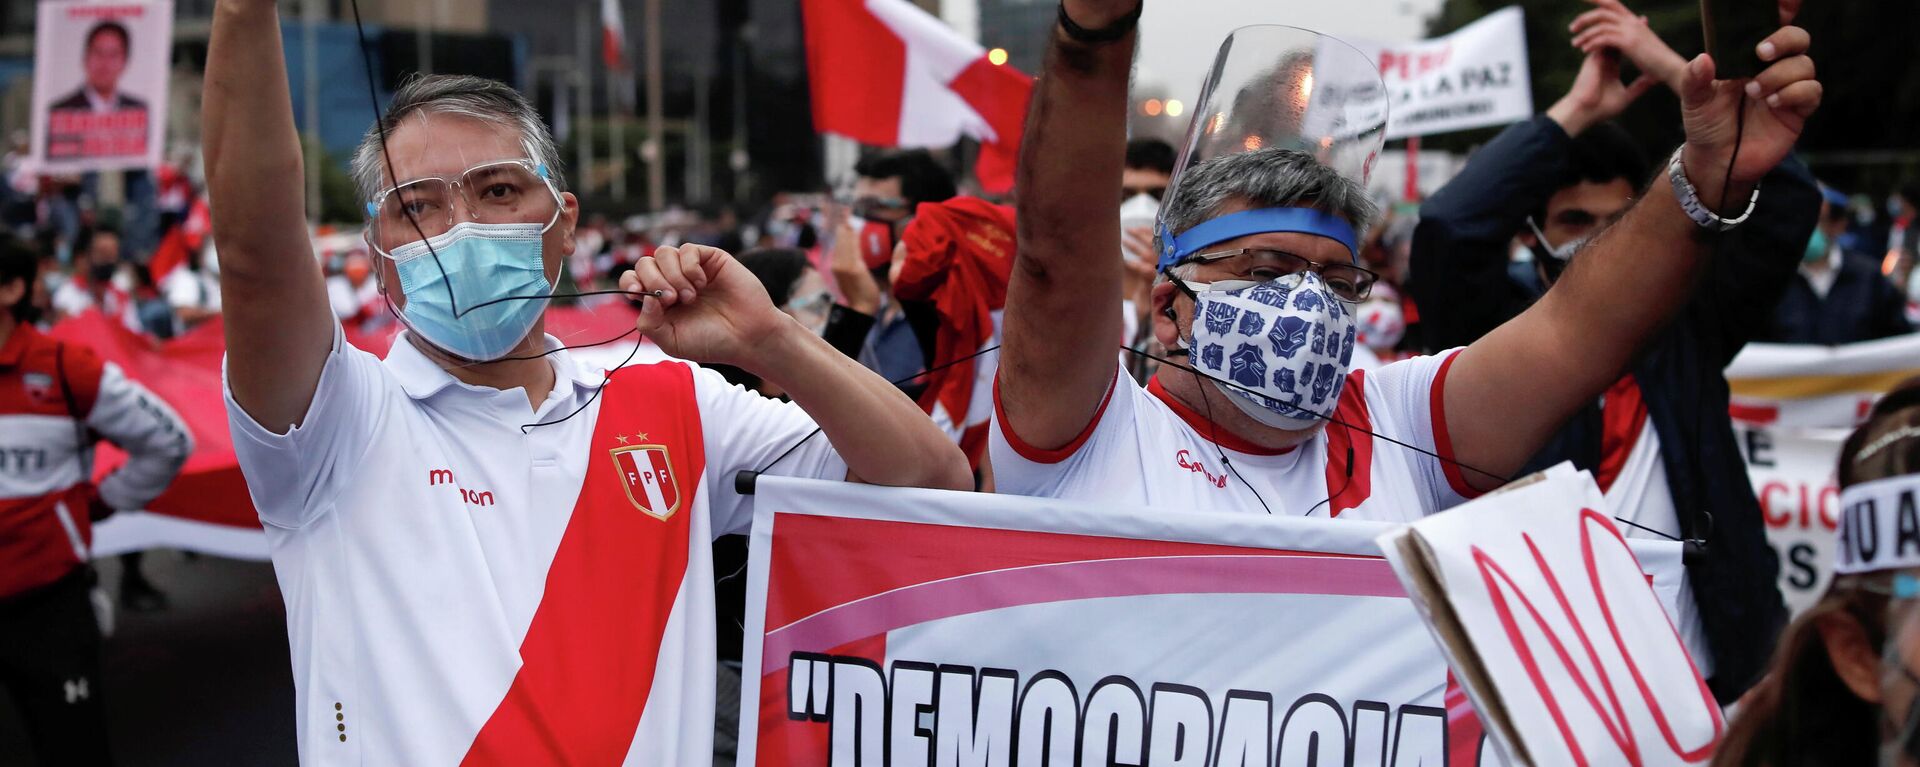 Una manifestación en vísperas de las elecciones presidenciales en Perú - Sputnik Mundo, 1920, 08.06.2021